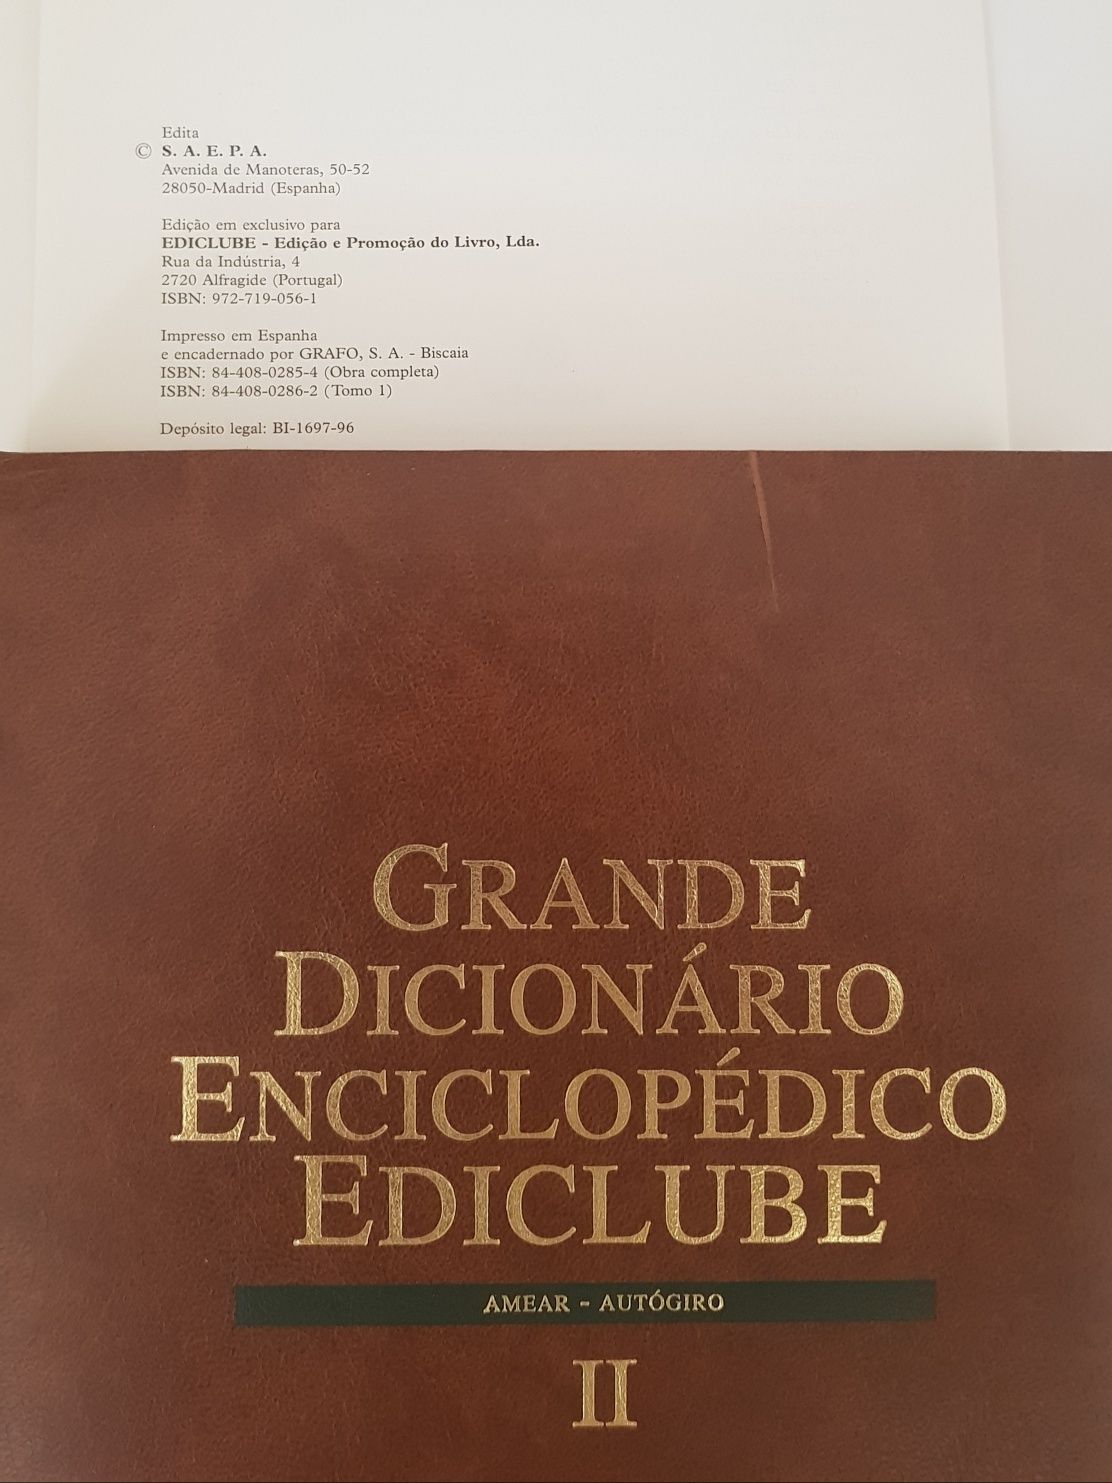 Grande Dicionário Enciclopédico 
19 volumes "